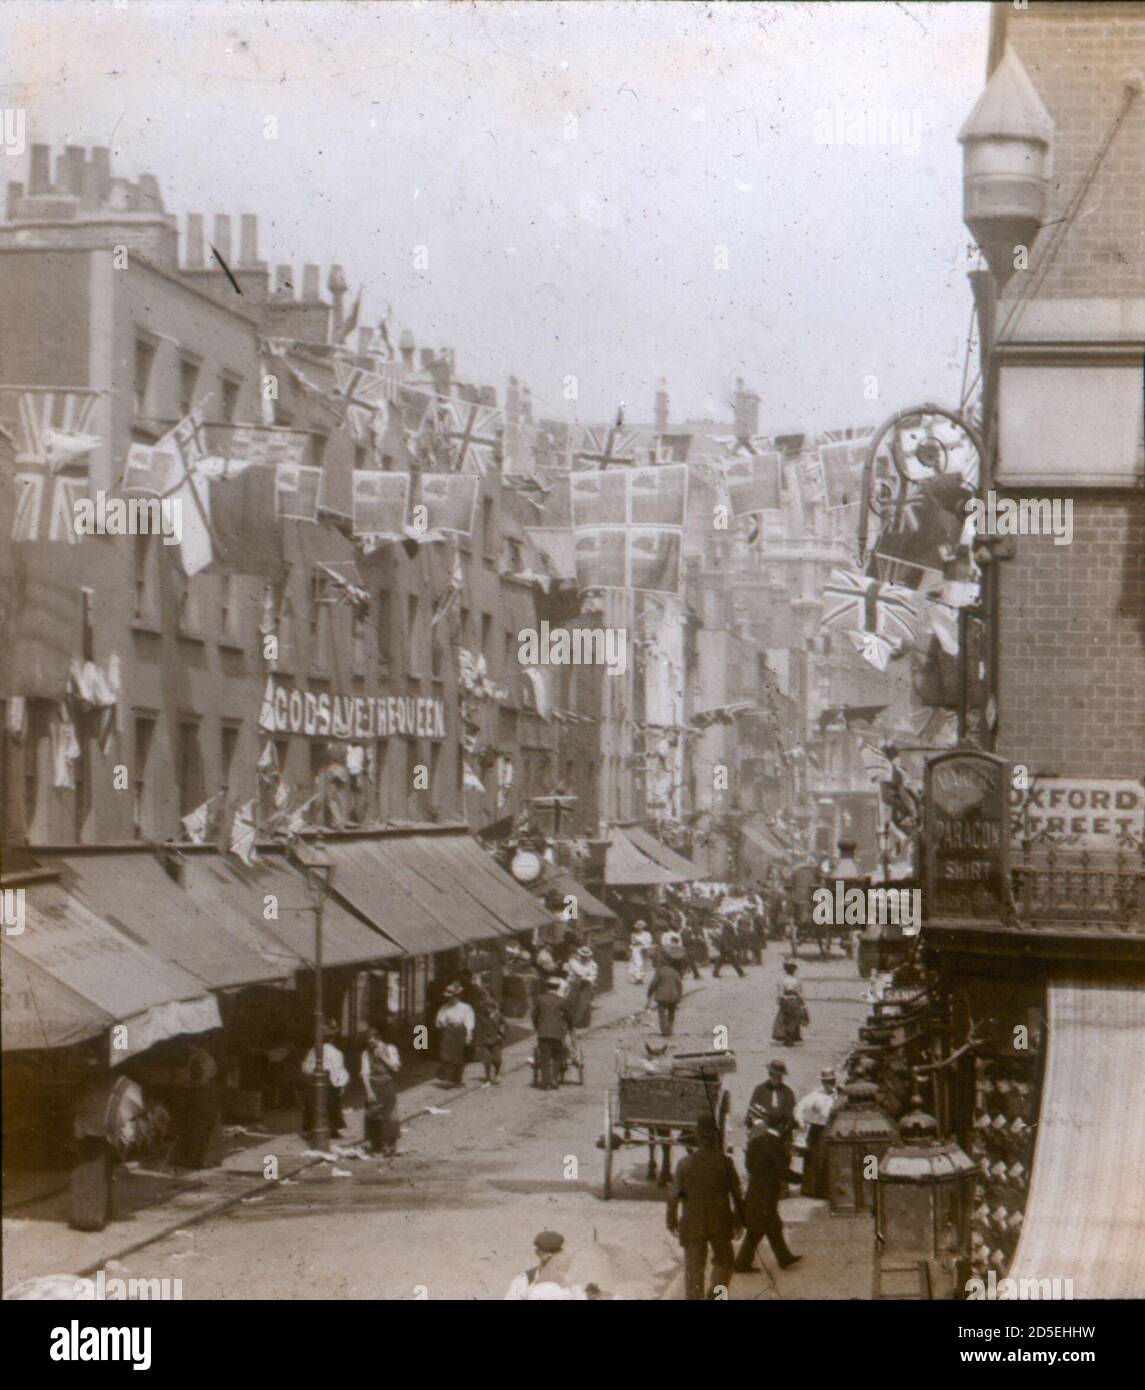 Les gens de l'époque victorienne se déplacent et font leurs courses dans Londres du XIXe siècle, à la jonction de St James Street et Oxford Street. Les drapeaux et les banderoles célébrant le 80e anniversaire de la reine Victoria sont visibles. Banque D'Images